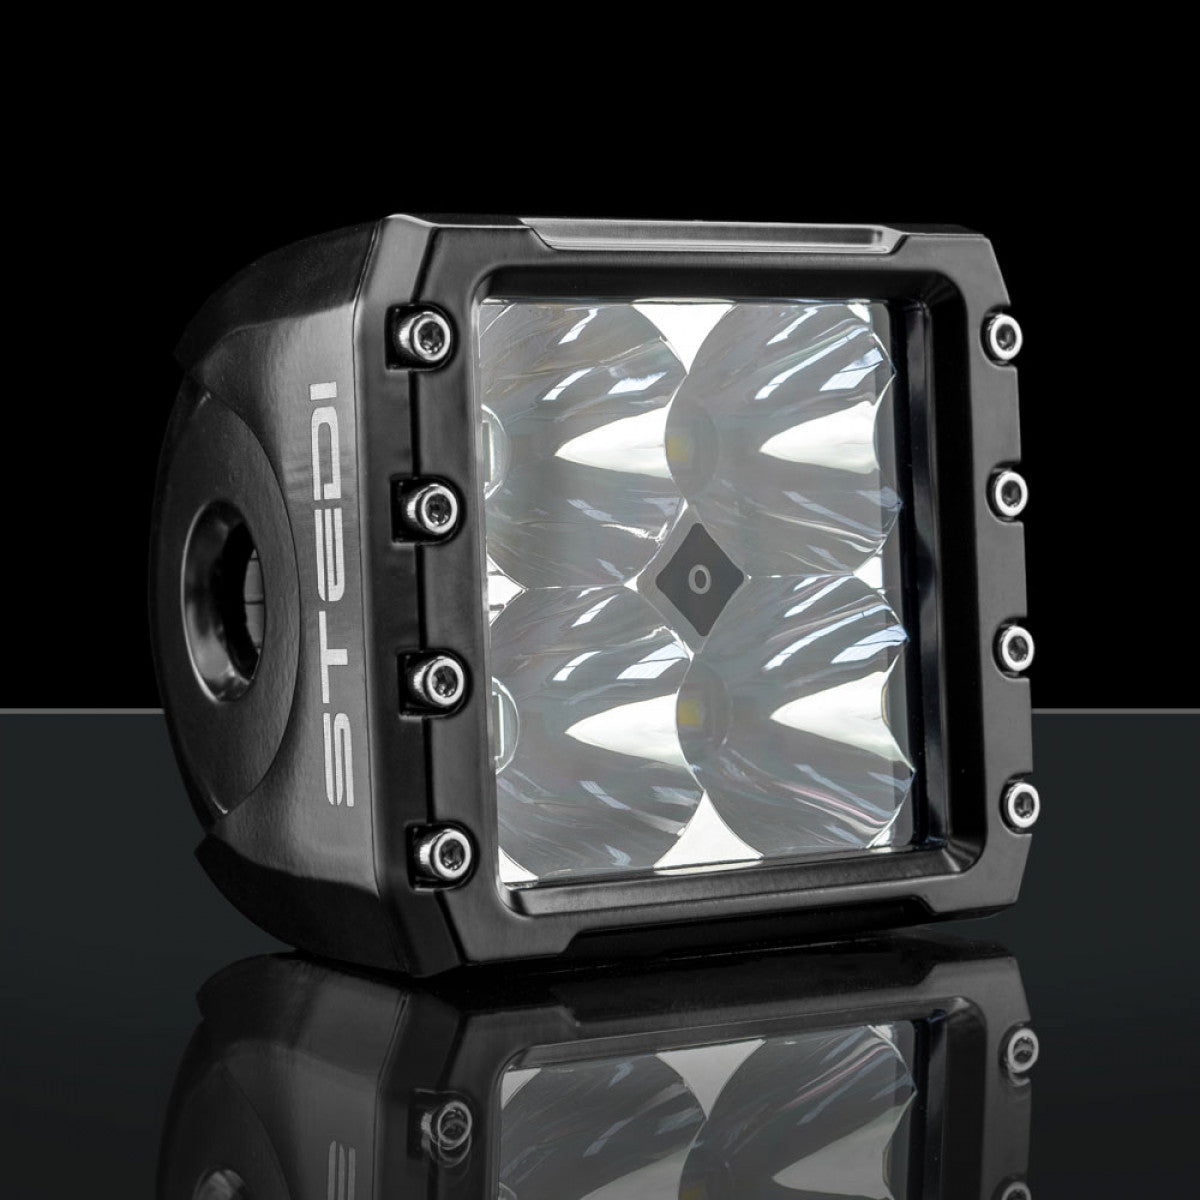 STEDI C-4 Black Edition LED Light Cube (Spot)